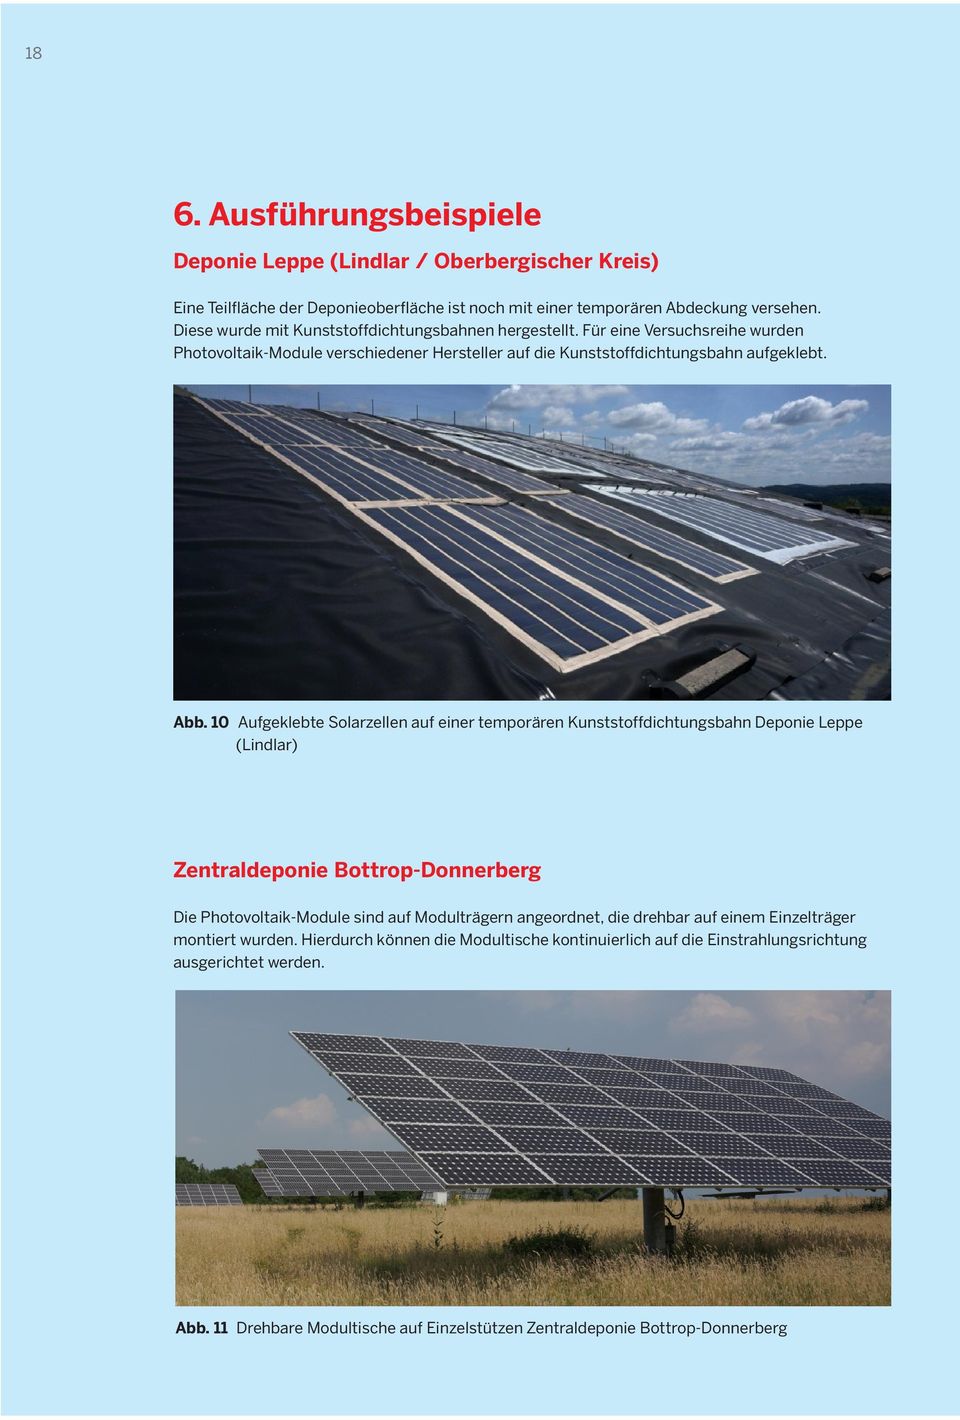 10 Aufgeklebte Solarzellen auf einer temporären Kunststoffdichtungsbahn Deponie Leppe (Lindlar) Zentraldeponie Bottrop-Donnerberg Die Photovoltaik-Module sind auf Modulträgern angeordnet,